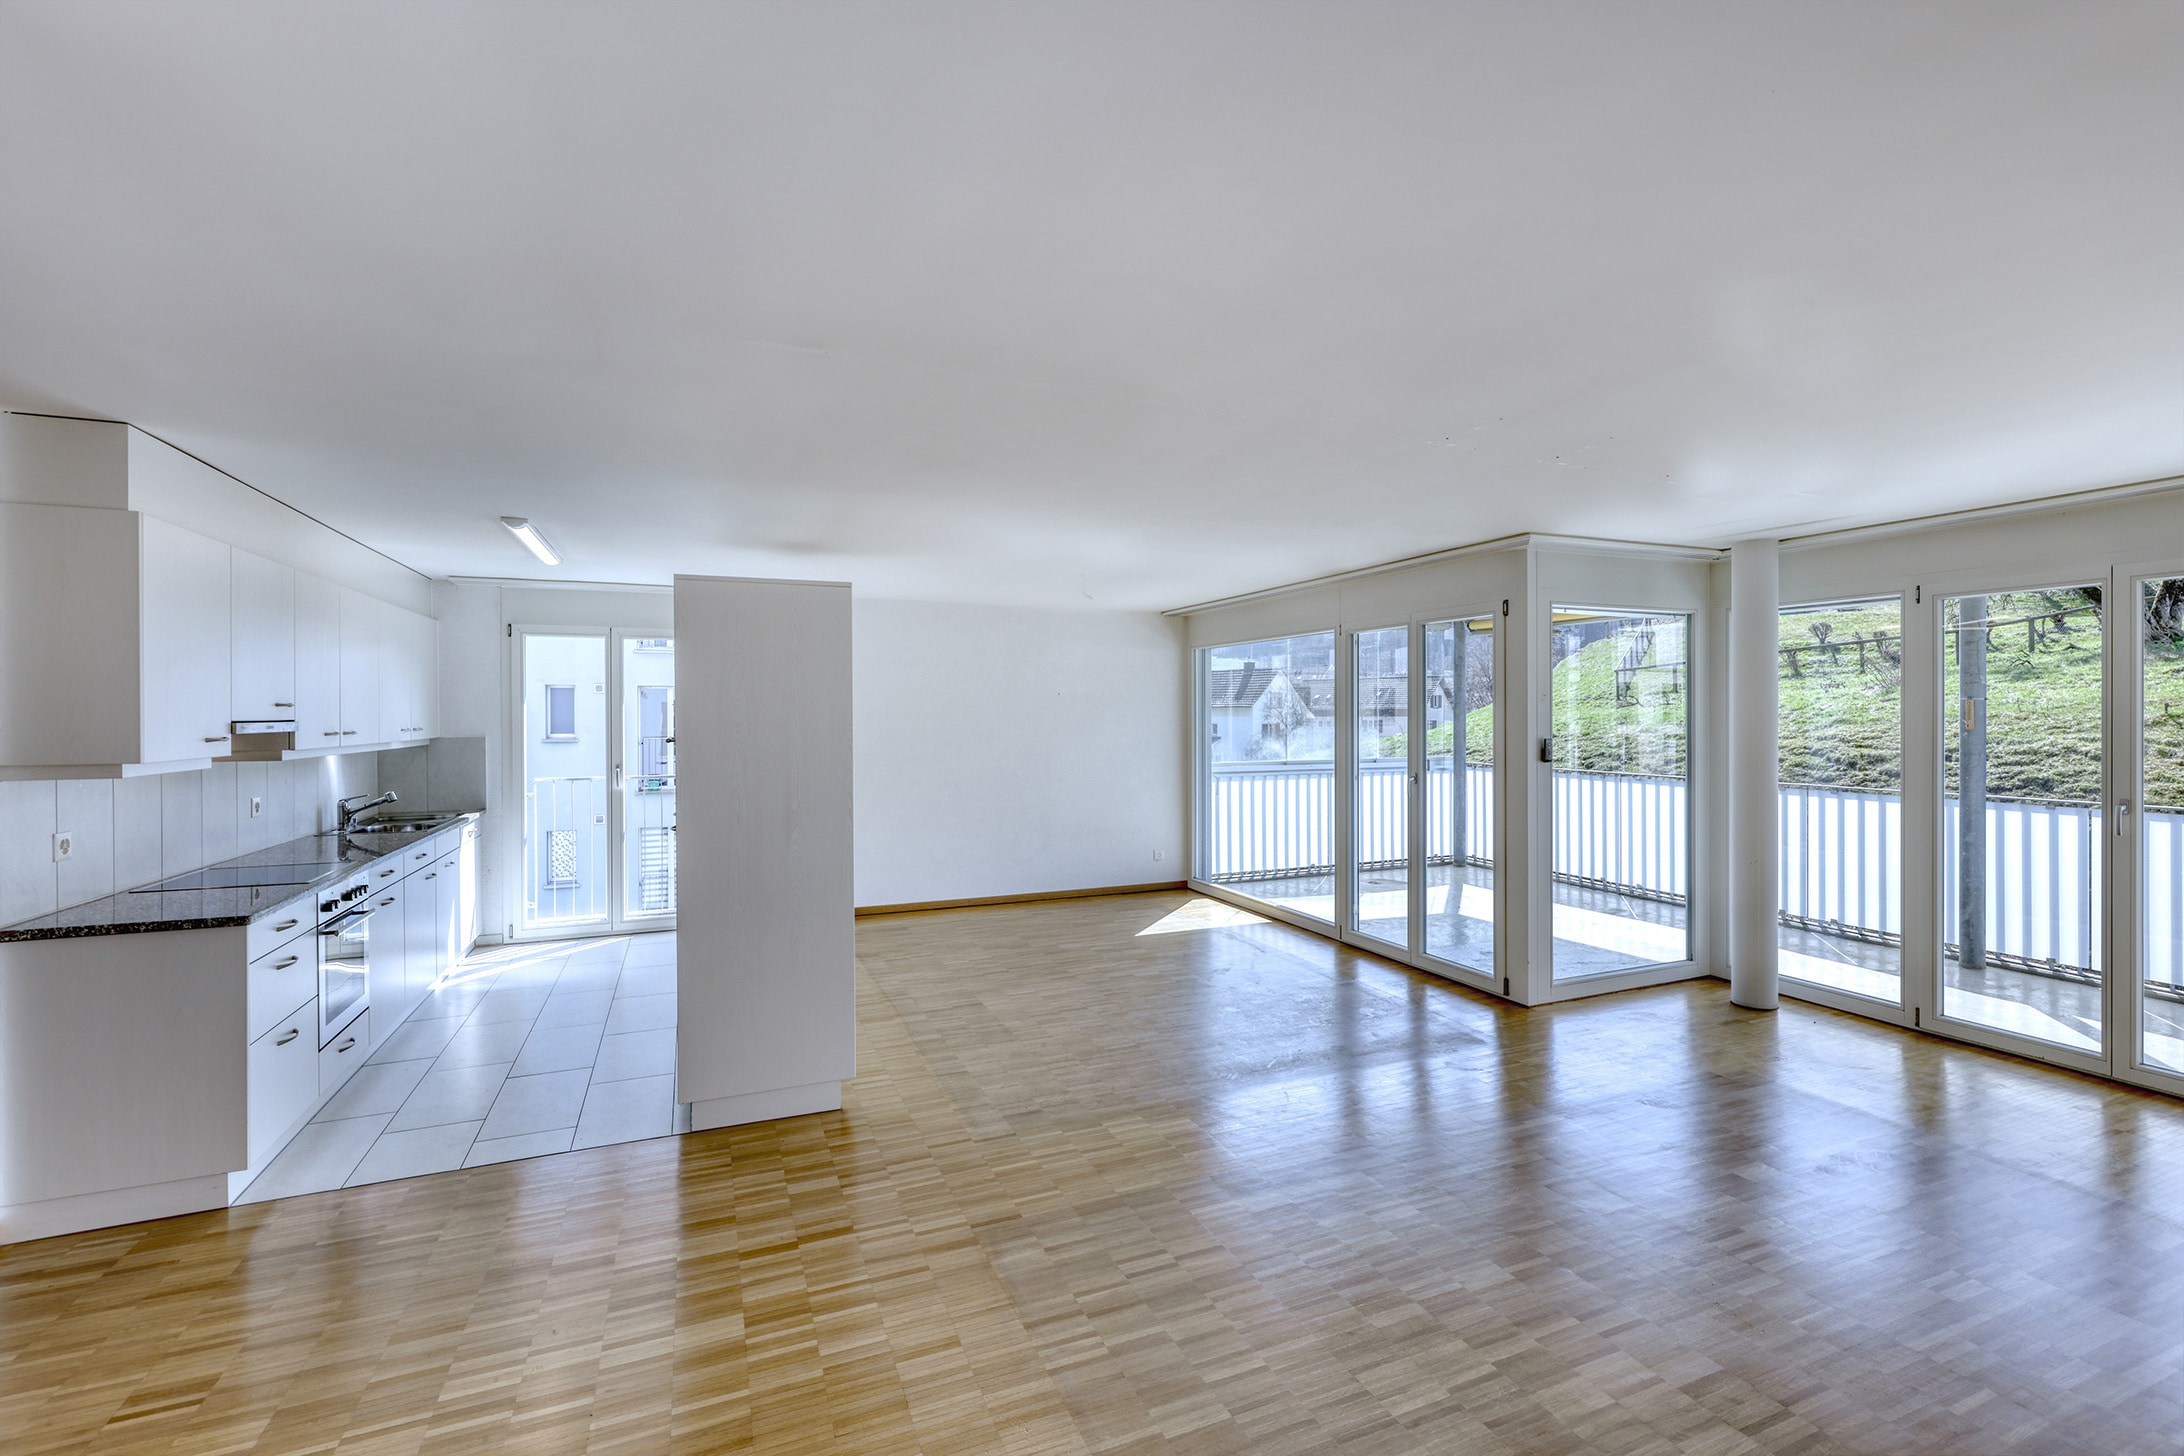 Immobilie kaufen: 3.5-Zimmer-Wohnung in Elsau, Innenansicht